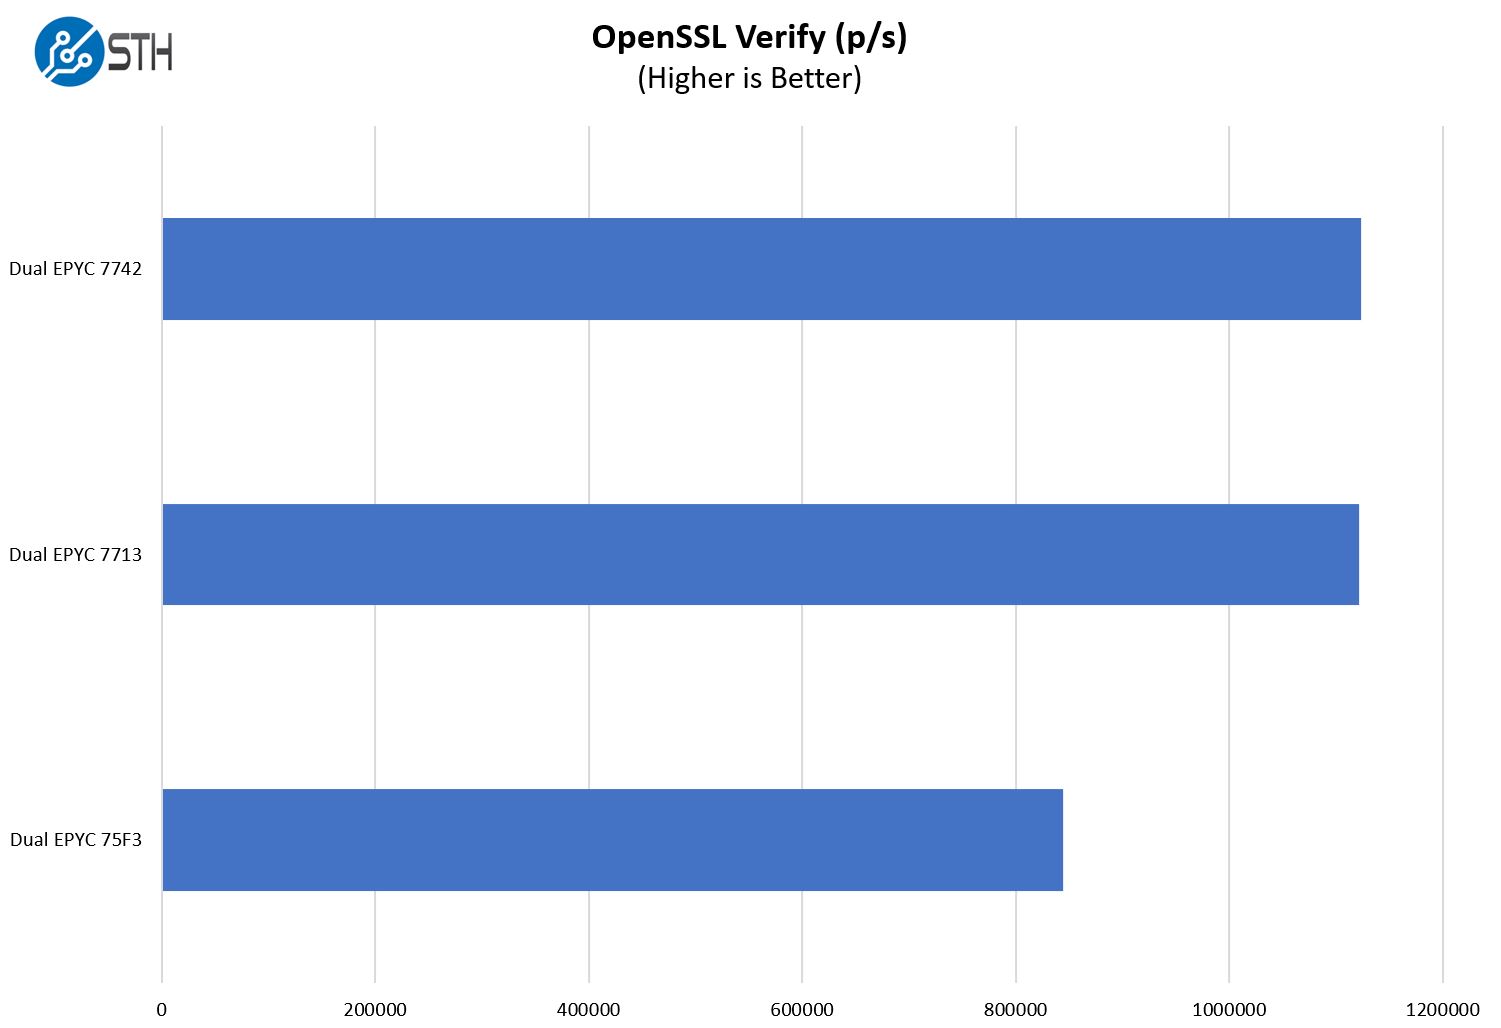 Supermicro AS 1024US TRT OpenSSL Verify Performance